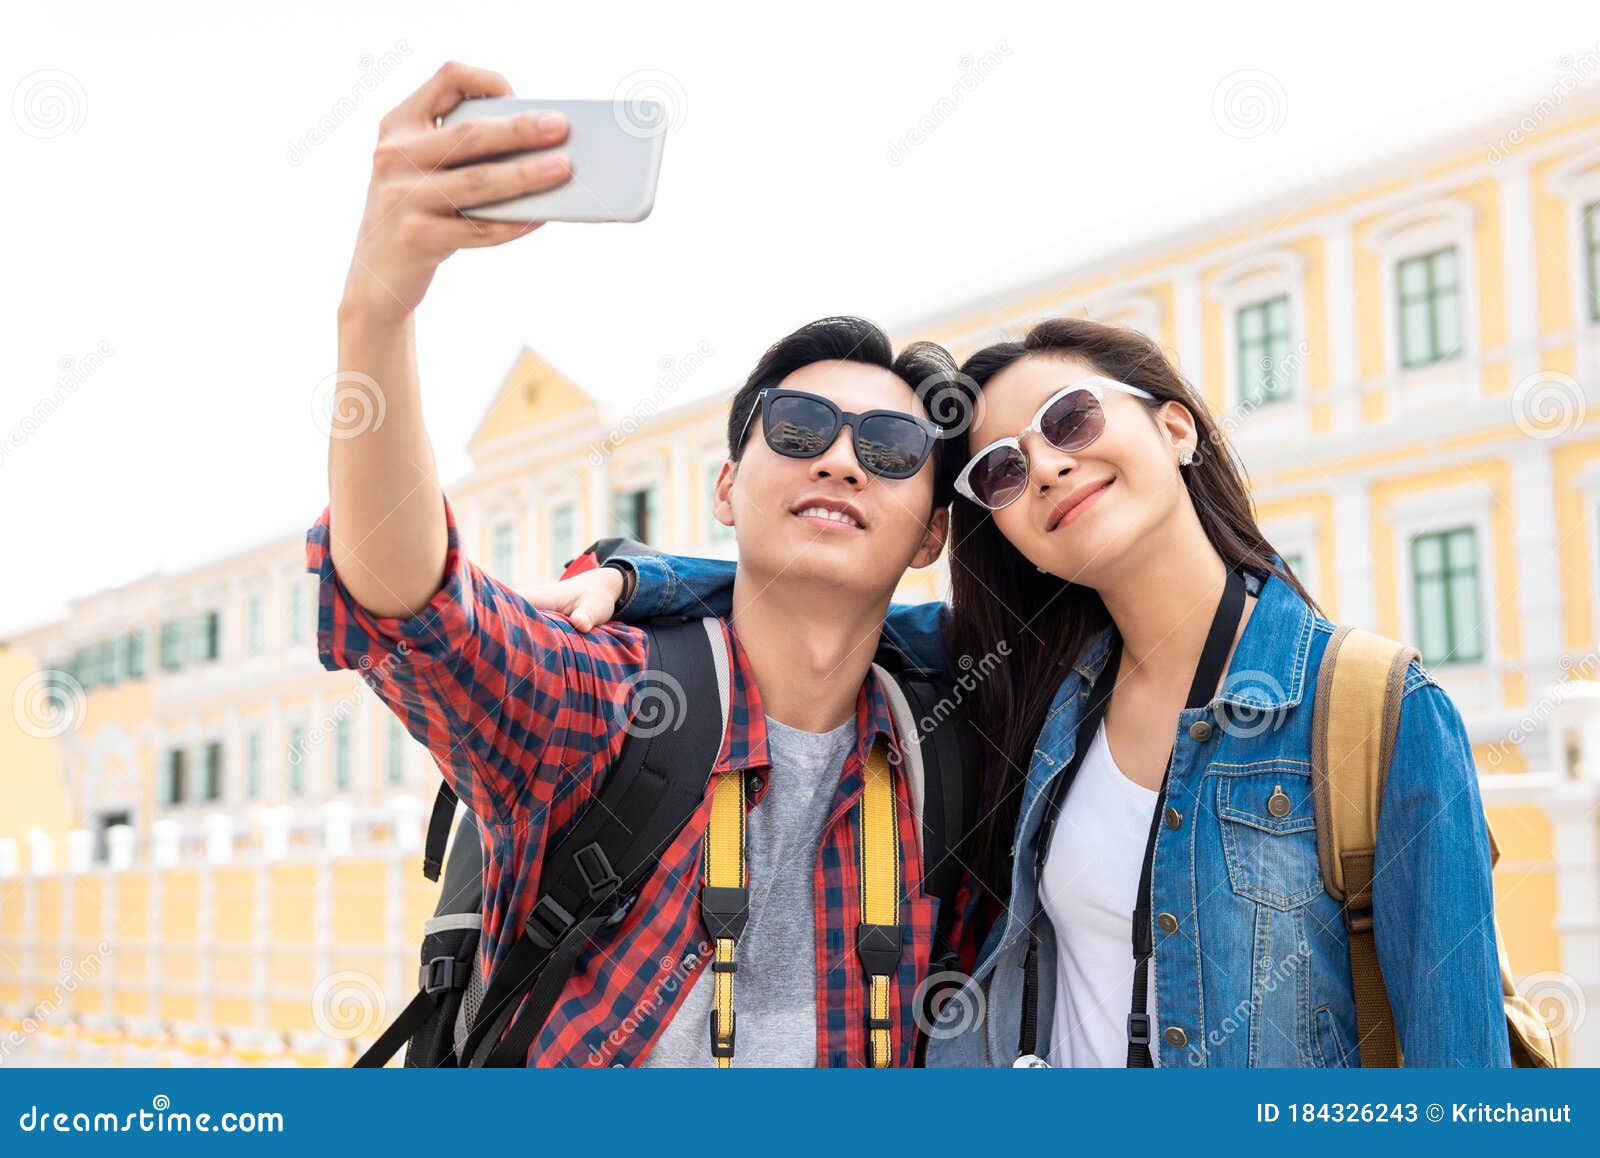 https://thumbs.dreamstime.com/z/jovem-casal-de-turistas-asi%C3%A1ticos-fazer-uma-selfie-em-bangkok-tail%C3%A2ndia-retrato-um-felizes-traje-casual-tirando-enquanto-184326243.jpg